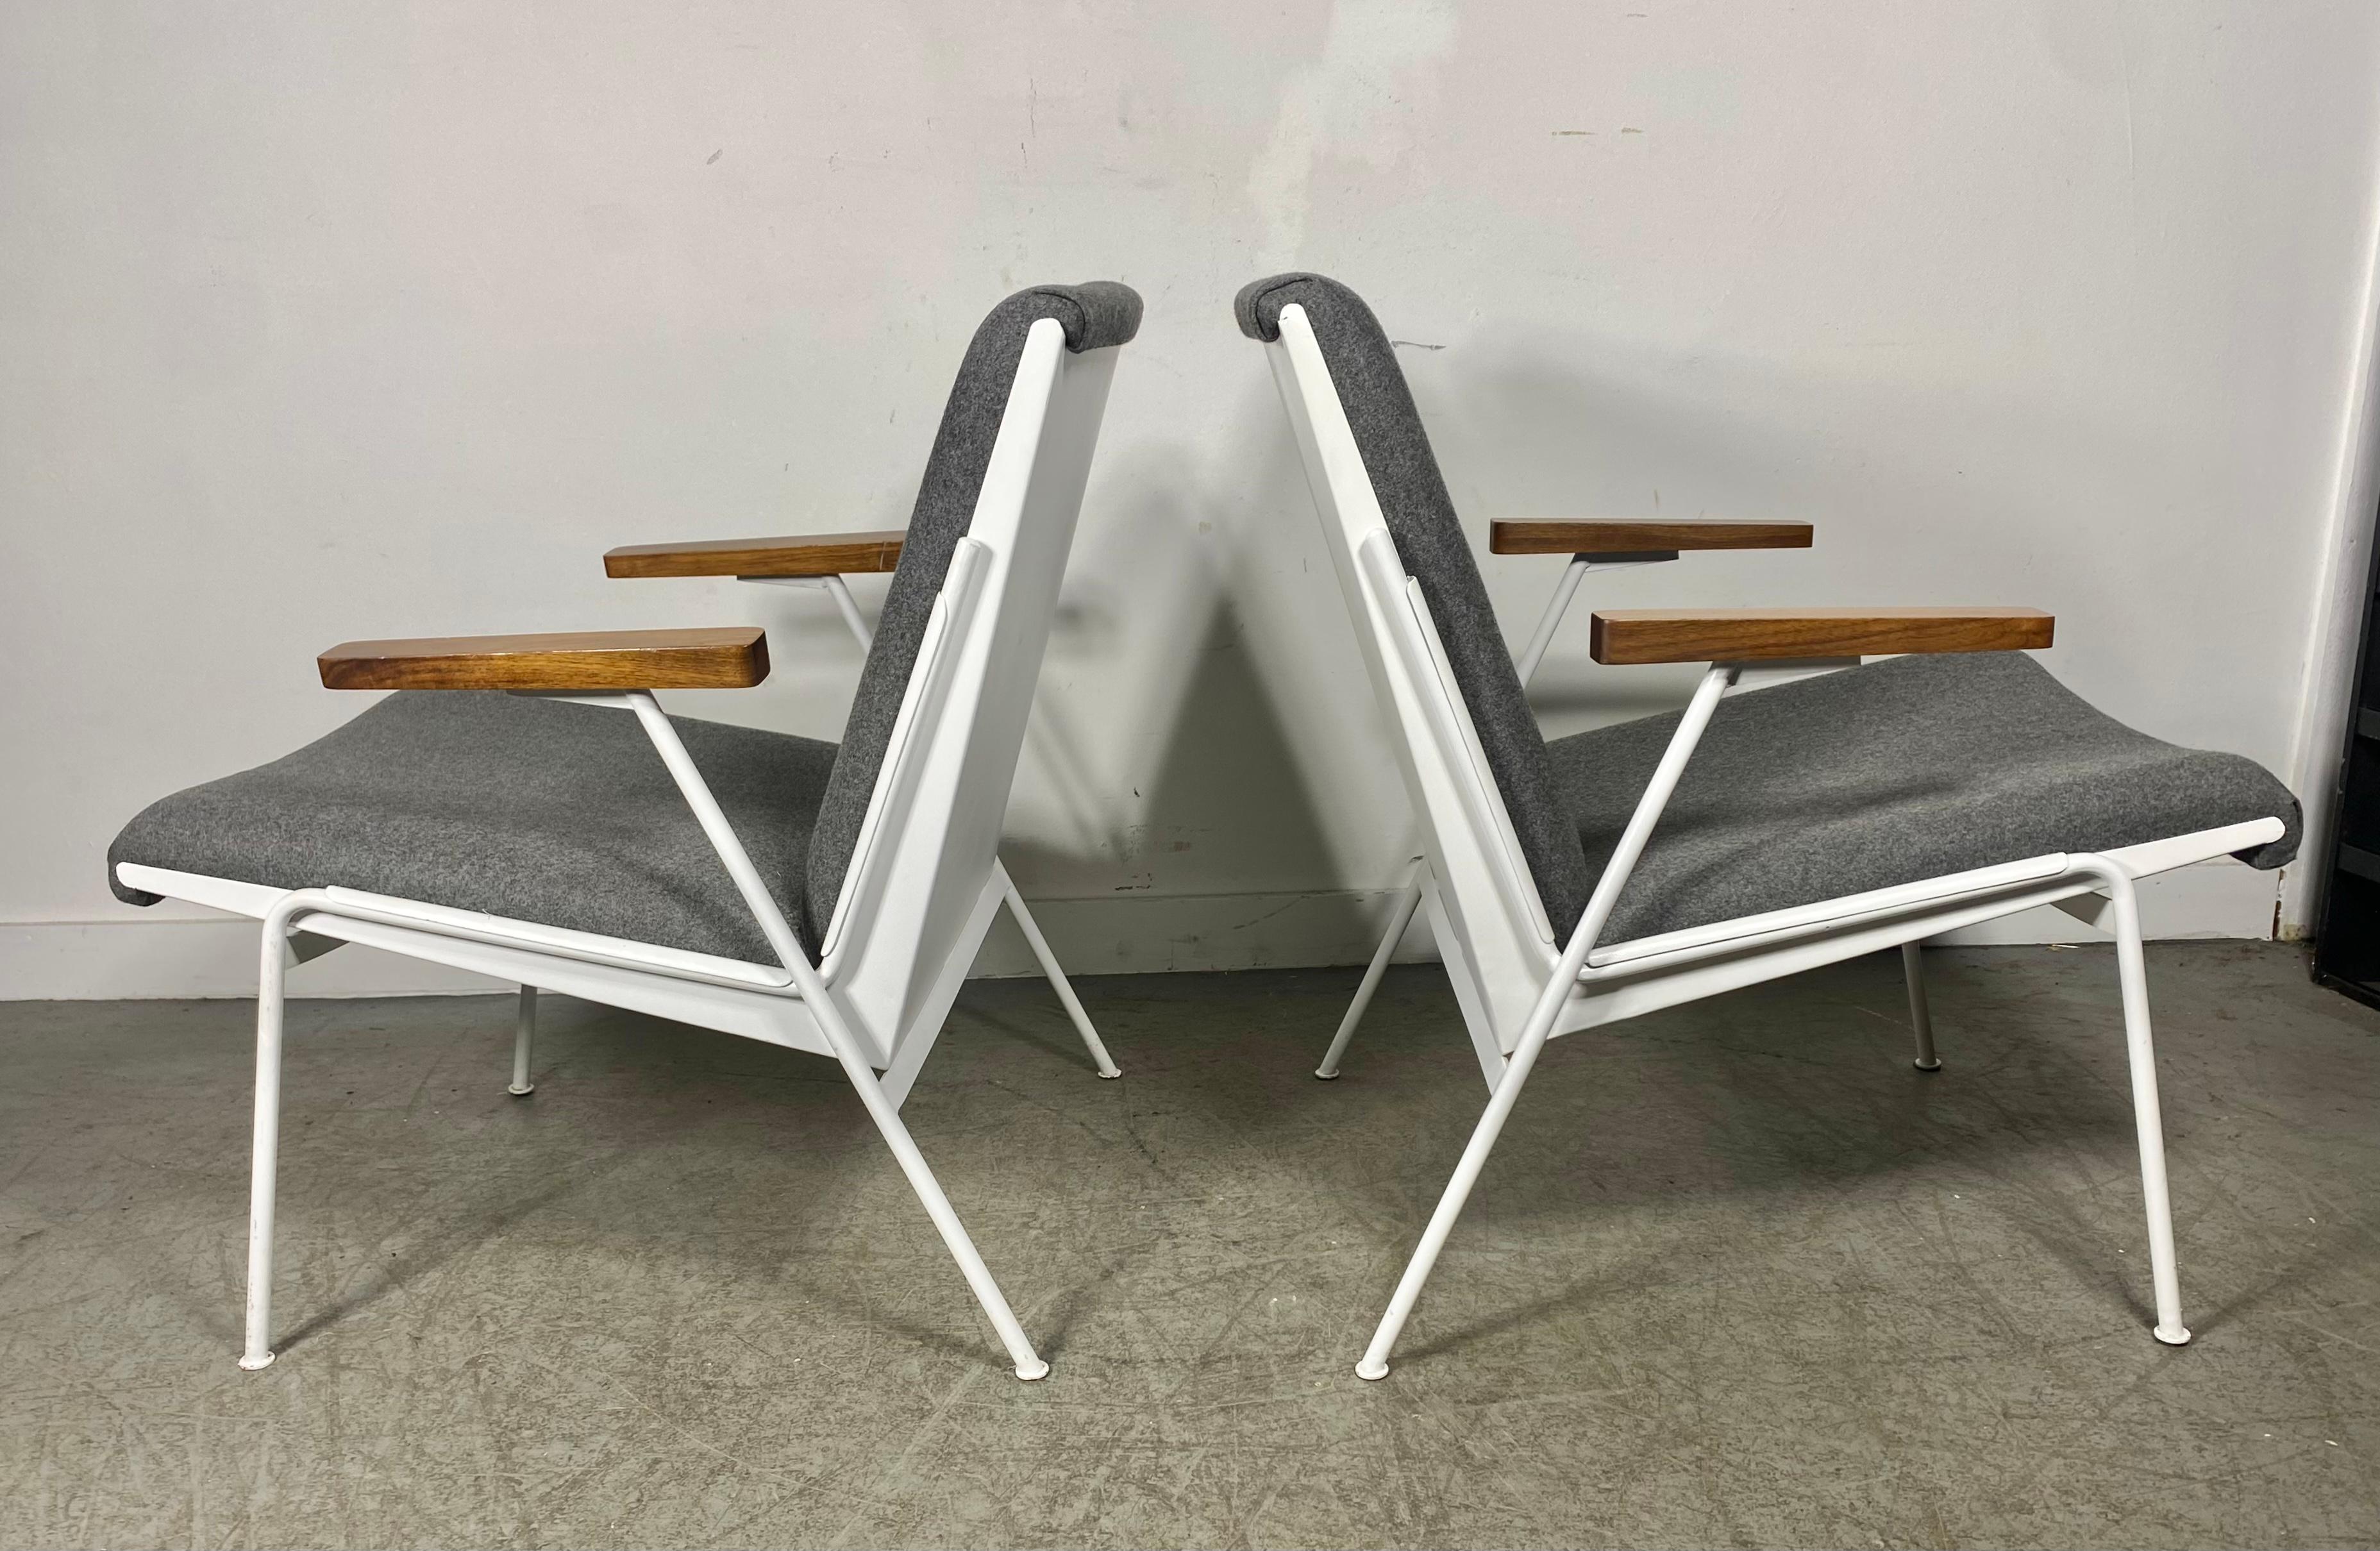 La chaise longue Oase a été conçue par Wim Rietveld pour Ahrend de Cirkel en 1958, et a obtenu le prix Signe d'Or en 1959. Une belle pièce de design/One ! Restauré dans un magnifique tissu en laine grise,, thermolaqué en blanc, étonnant contraste .